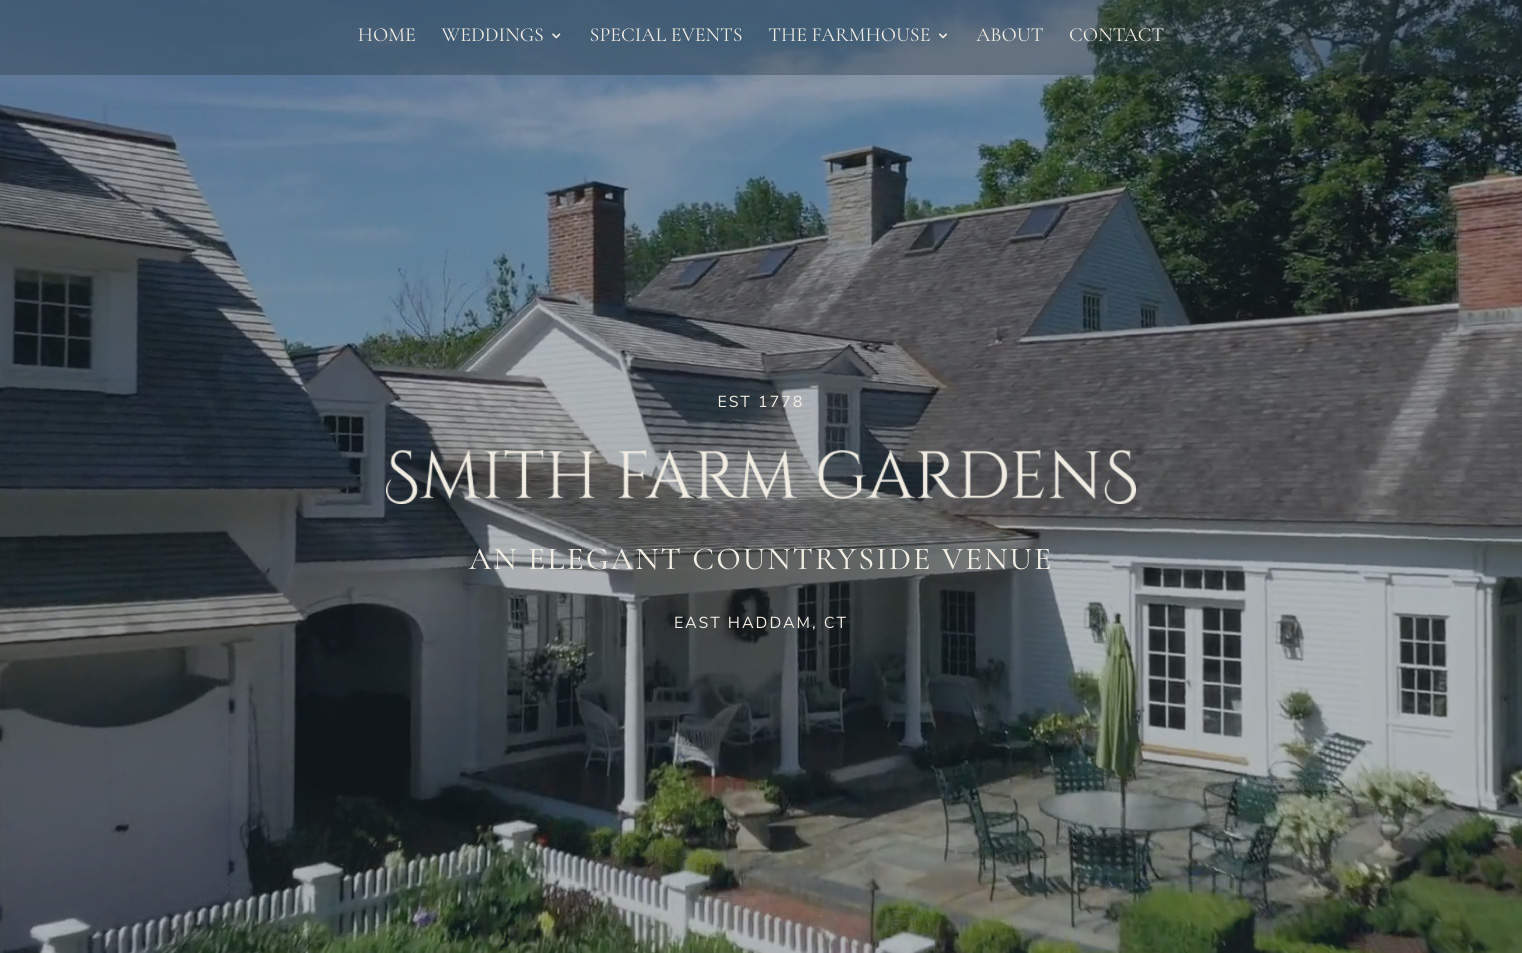 Smith Farm Gardens